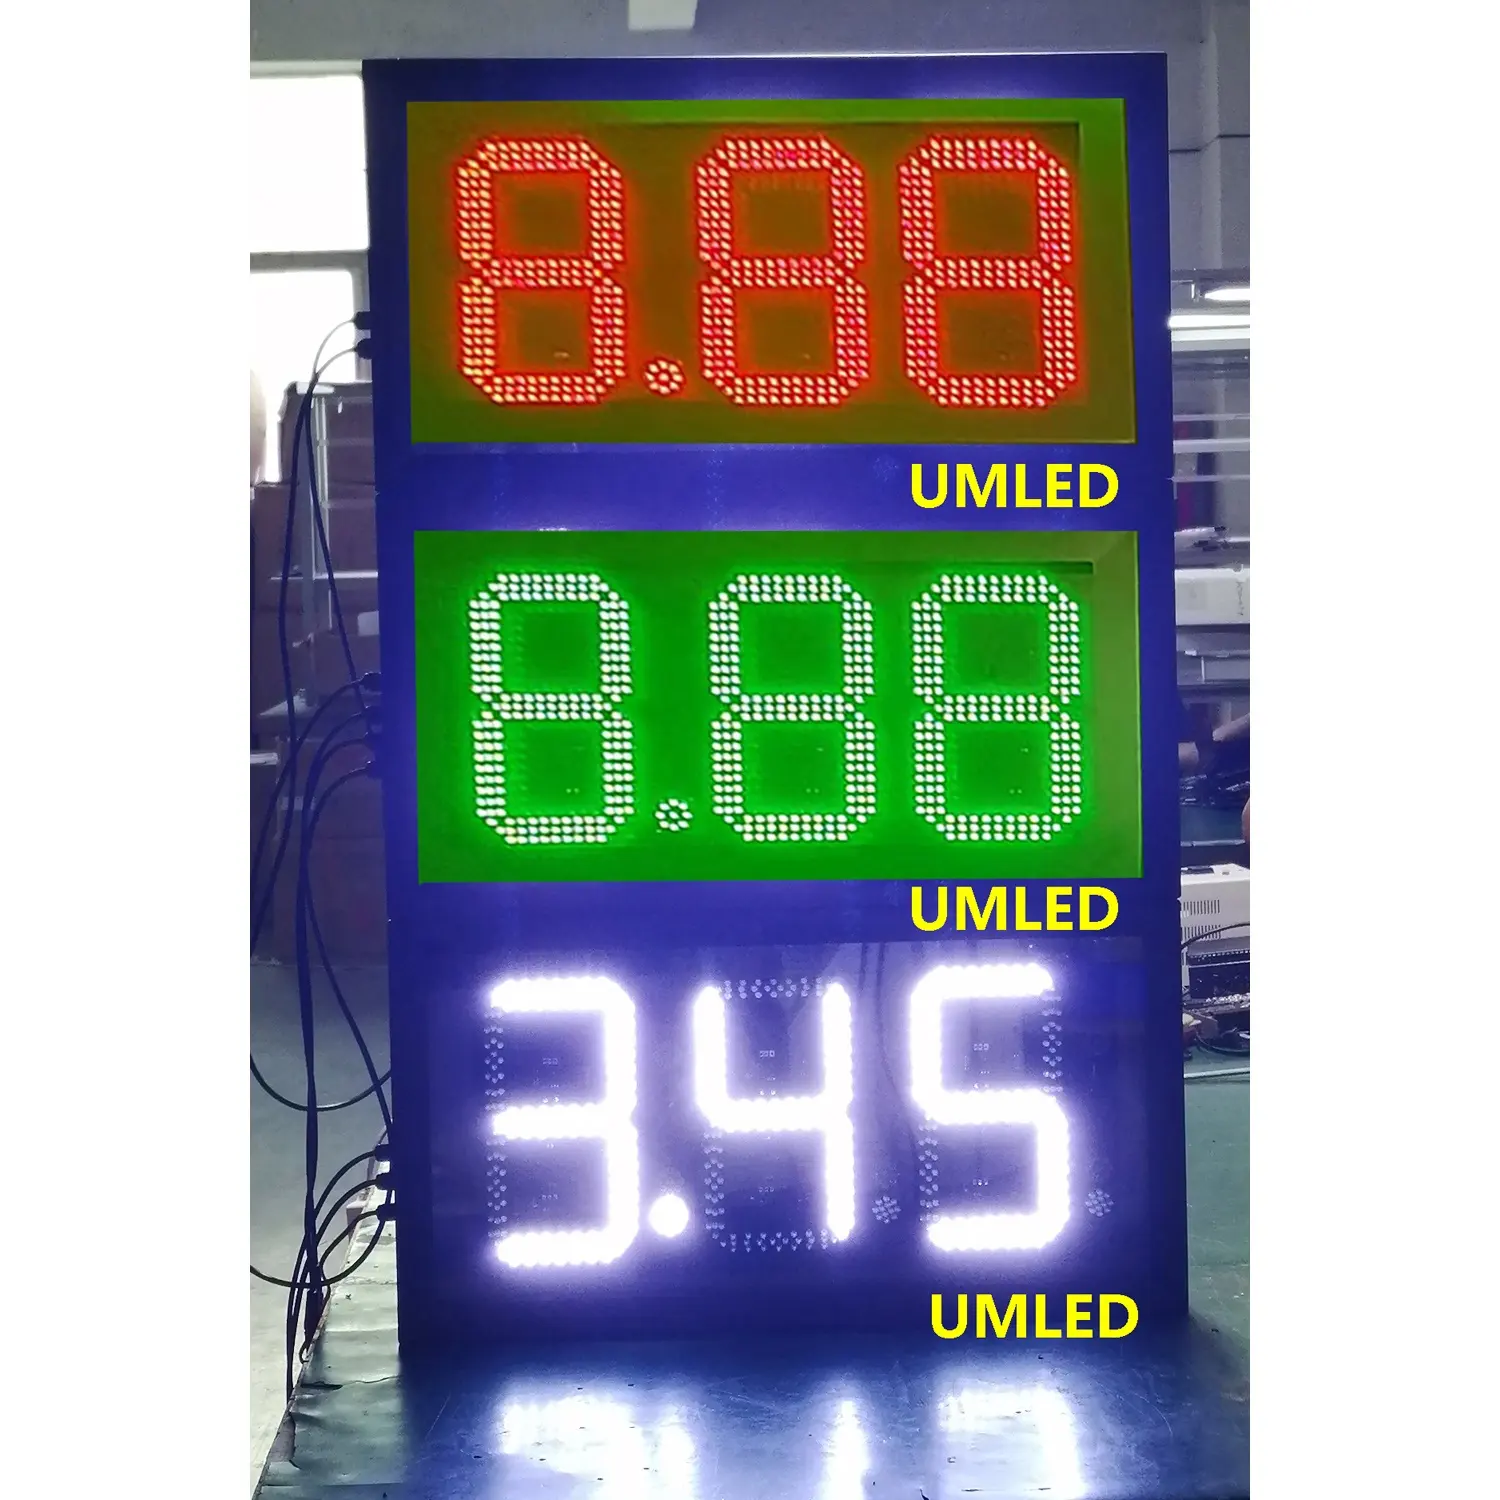 Açık benzin dijital ekran istasyonu iç ve dış mekan kullanımı için xxx yağı ile benzin fiyatı tabelası açtı